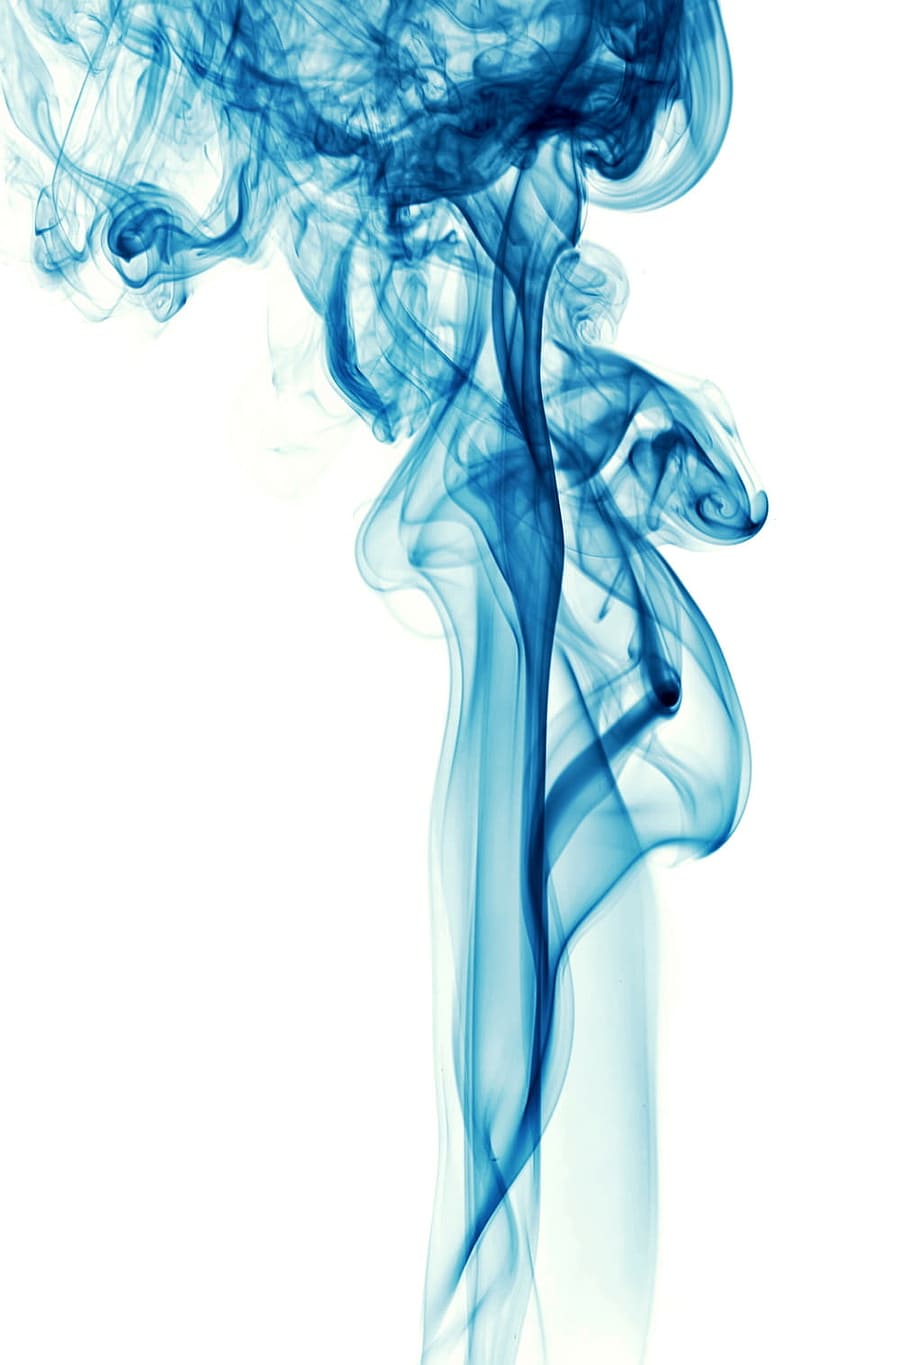 fumaça, abstrato, azul, fundo, branco, vapor, onda, ar, fluxo, curva